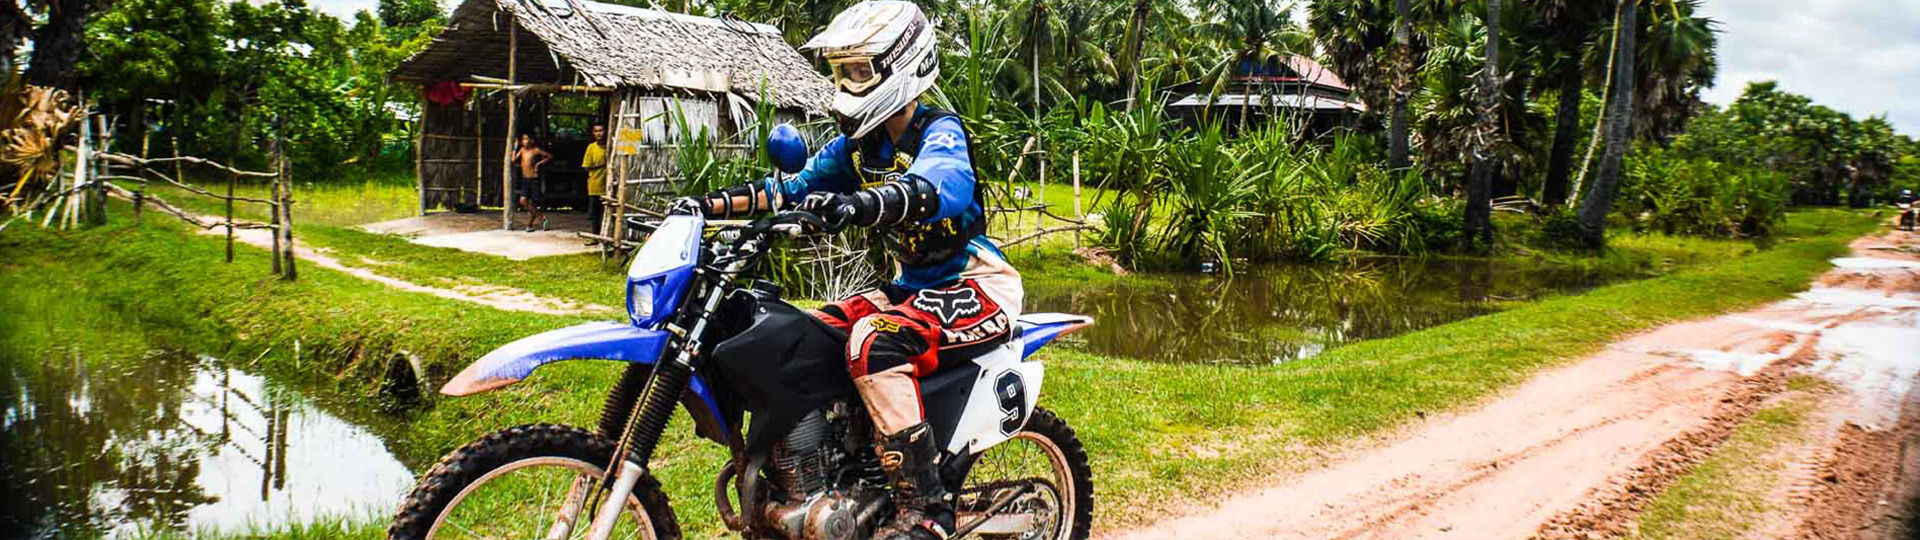 Hanoi Motorbike Tour to Mai Chau and Ta Xua peak – 3 Days